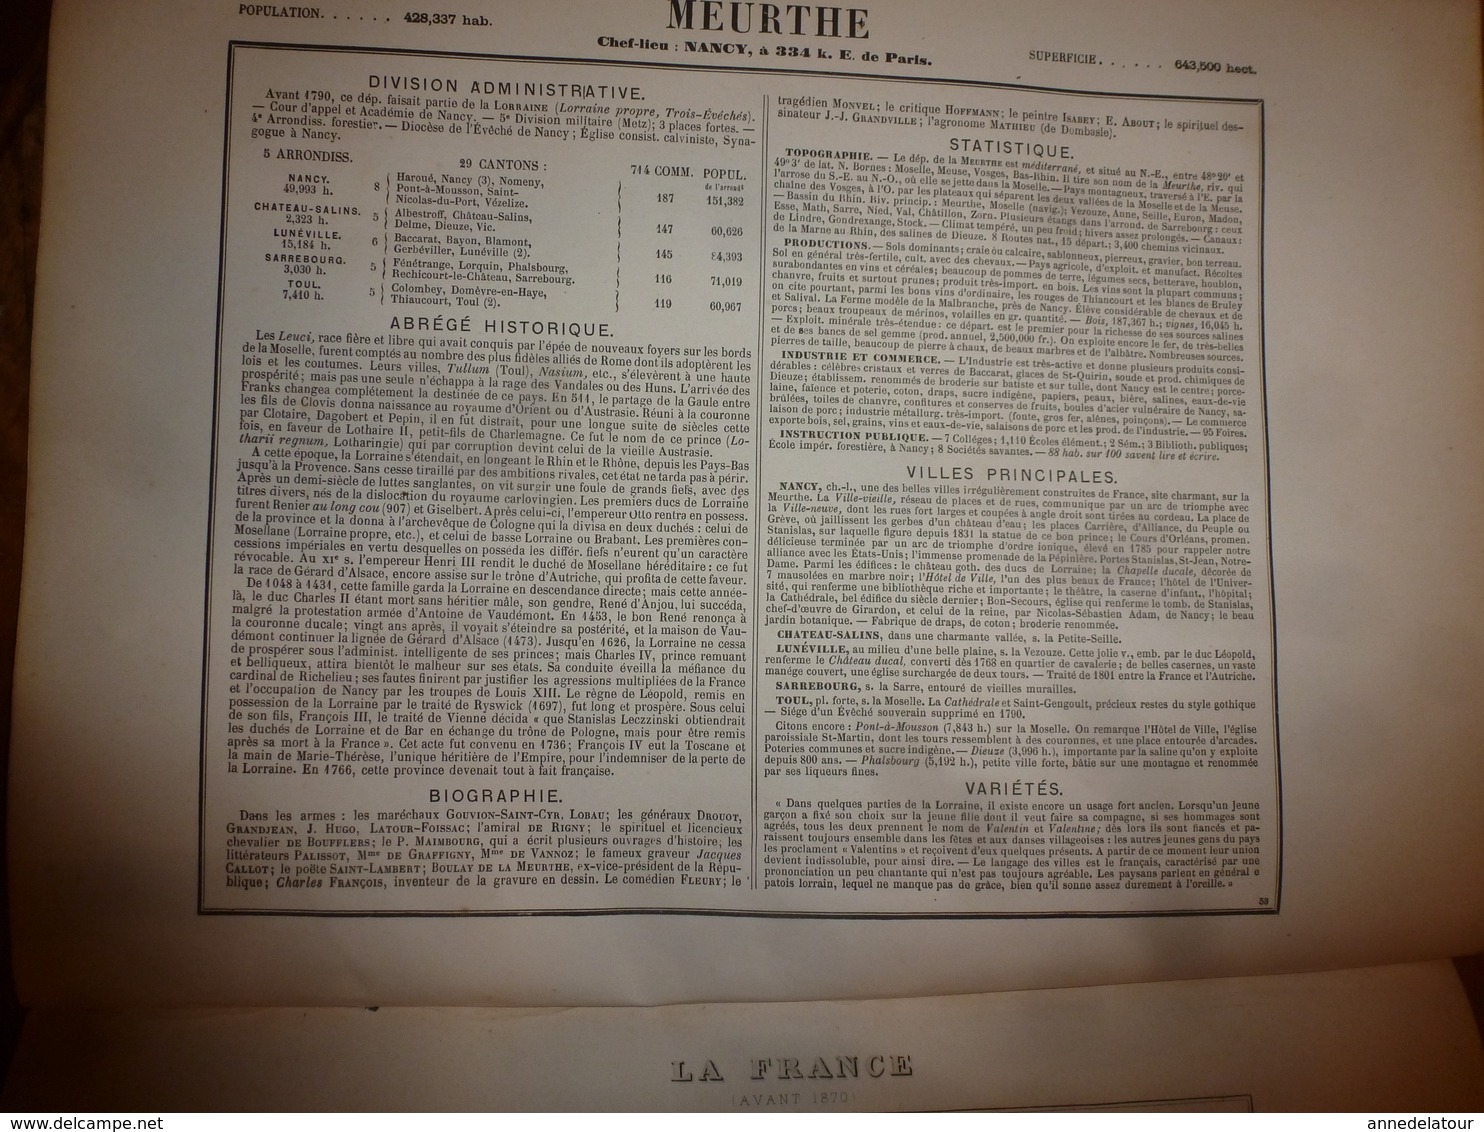 1880 MEURTHE (Nancy,Château-Salins,Sarrebourg,etc) Carte Géographique-Descriptive:grav. taille douce-Migeon,géographe.